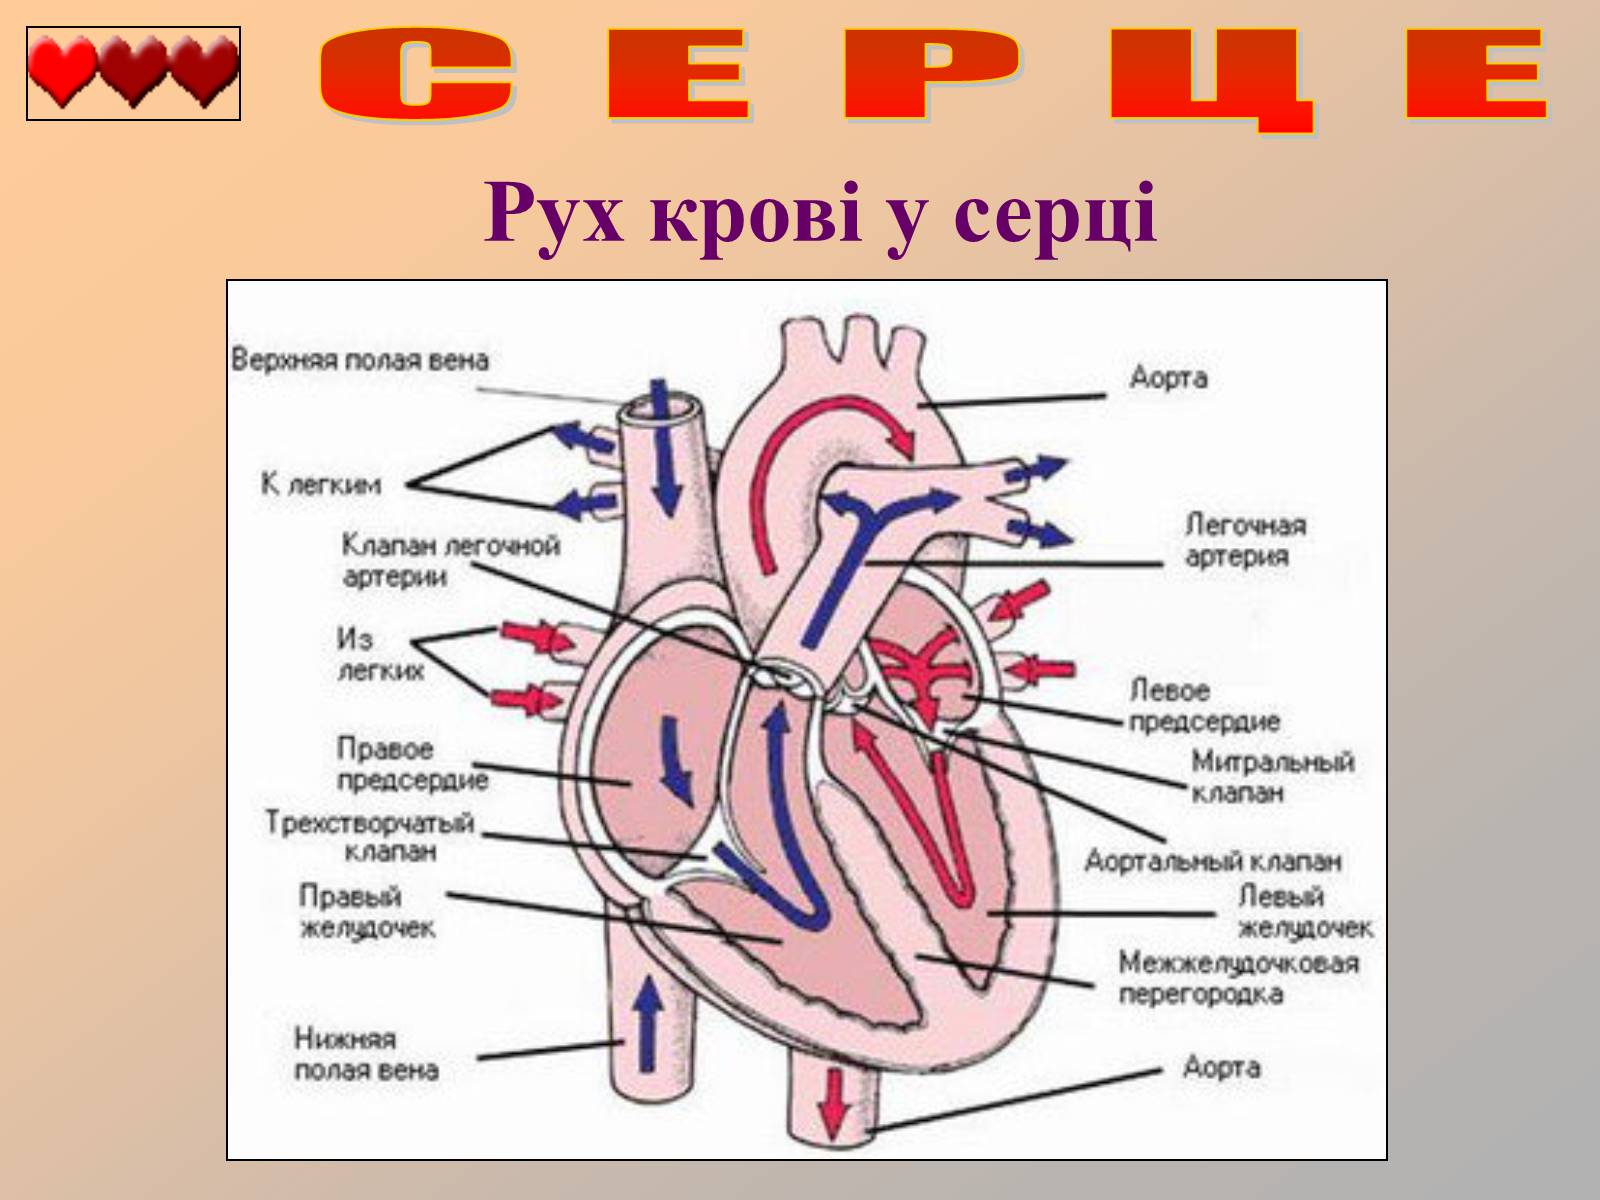 От левого предсердия к легким. Строение сердца человека схема клапаны. Строение сердца с клапанами схема. Схема внутреннего строения сердца. Строение сердца рисунок.